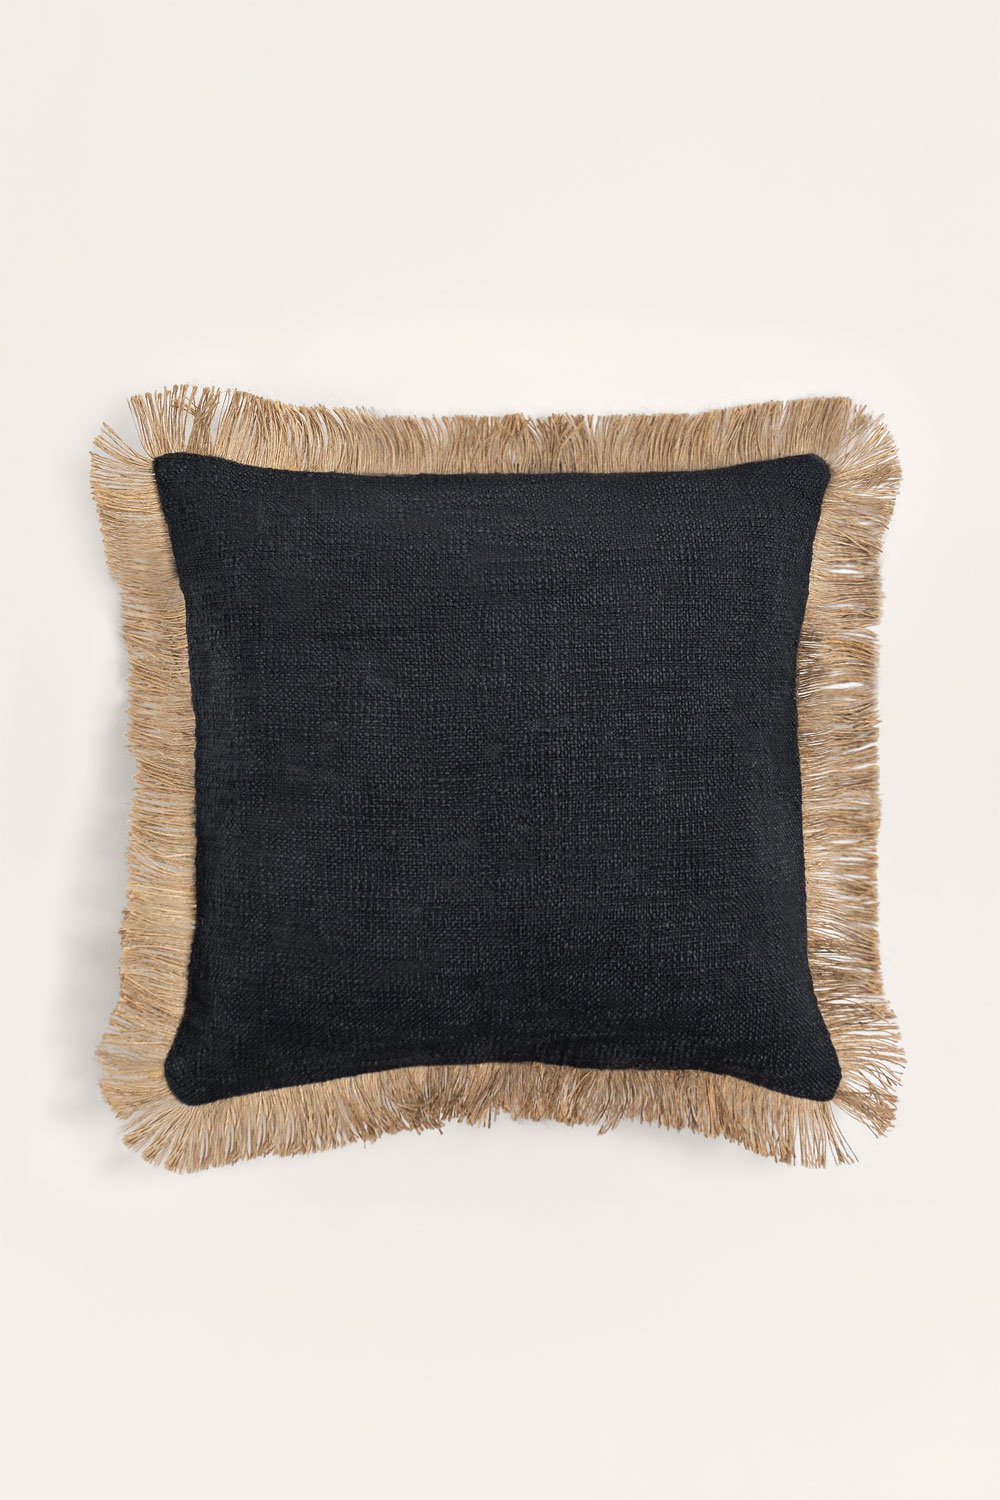 Poduszka kwadratowa bawełniana (45x45 cm) Paraiba, obrazek w galerii 1